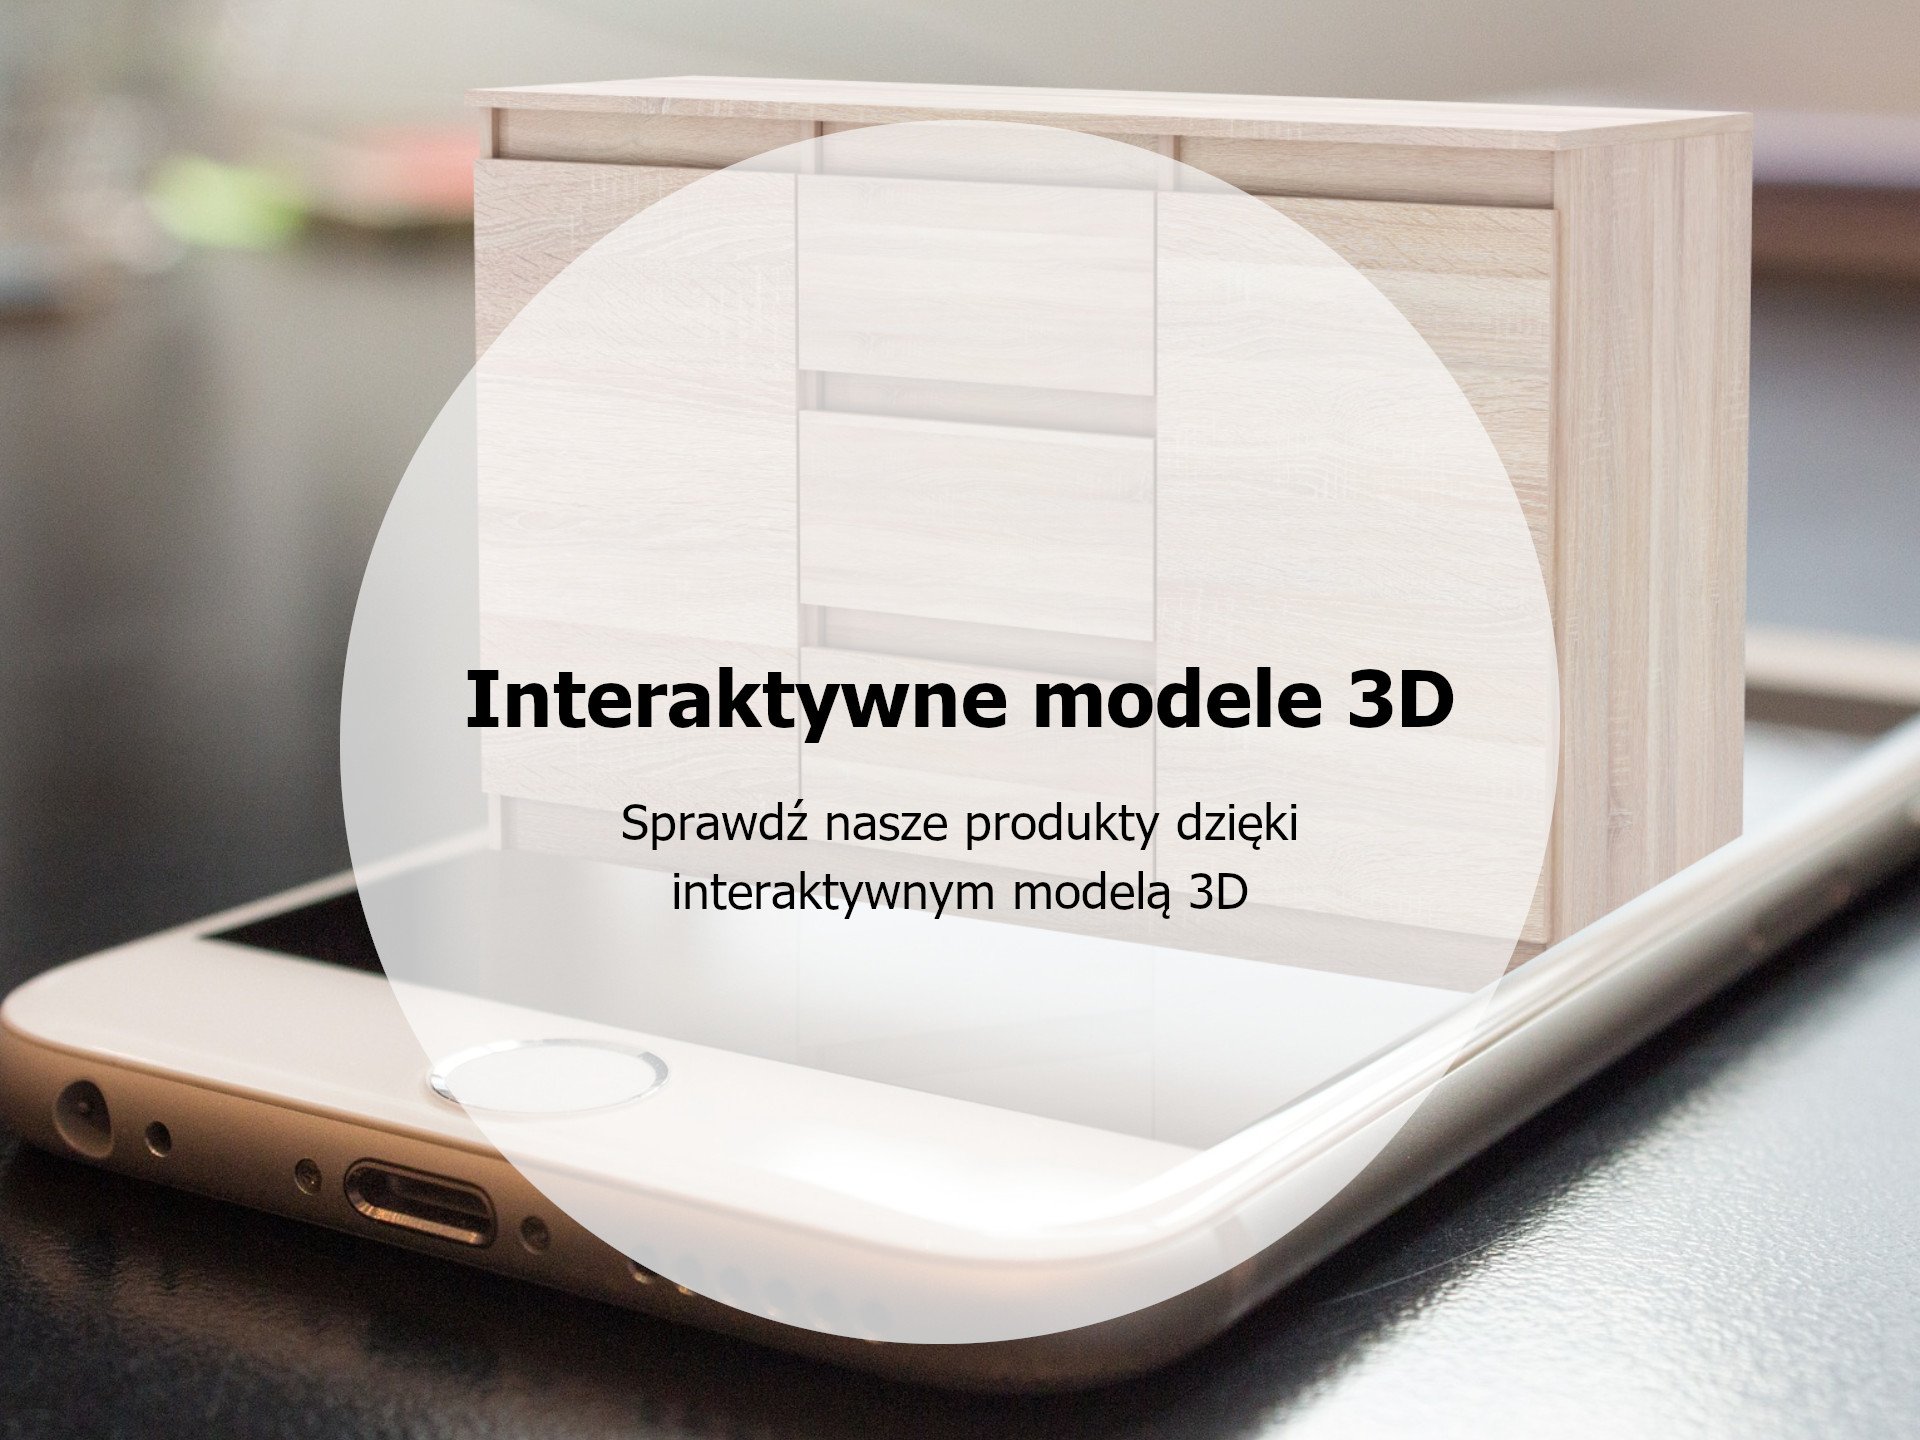 InteraktywneModele3D